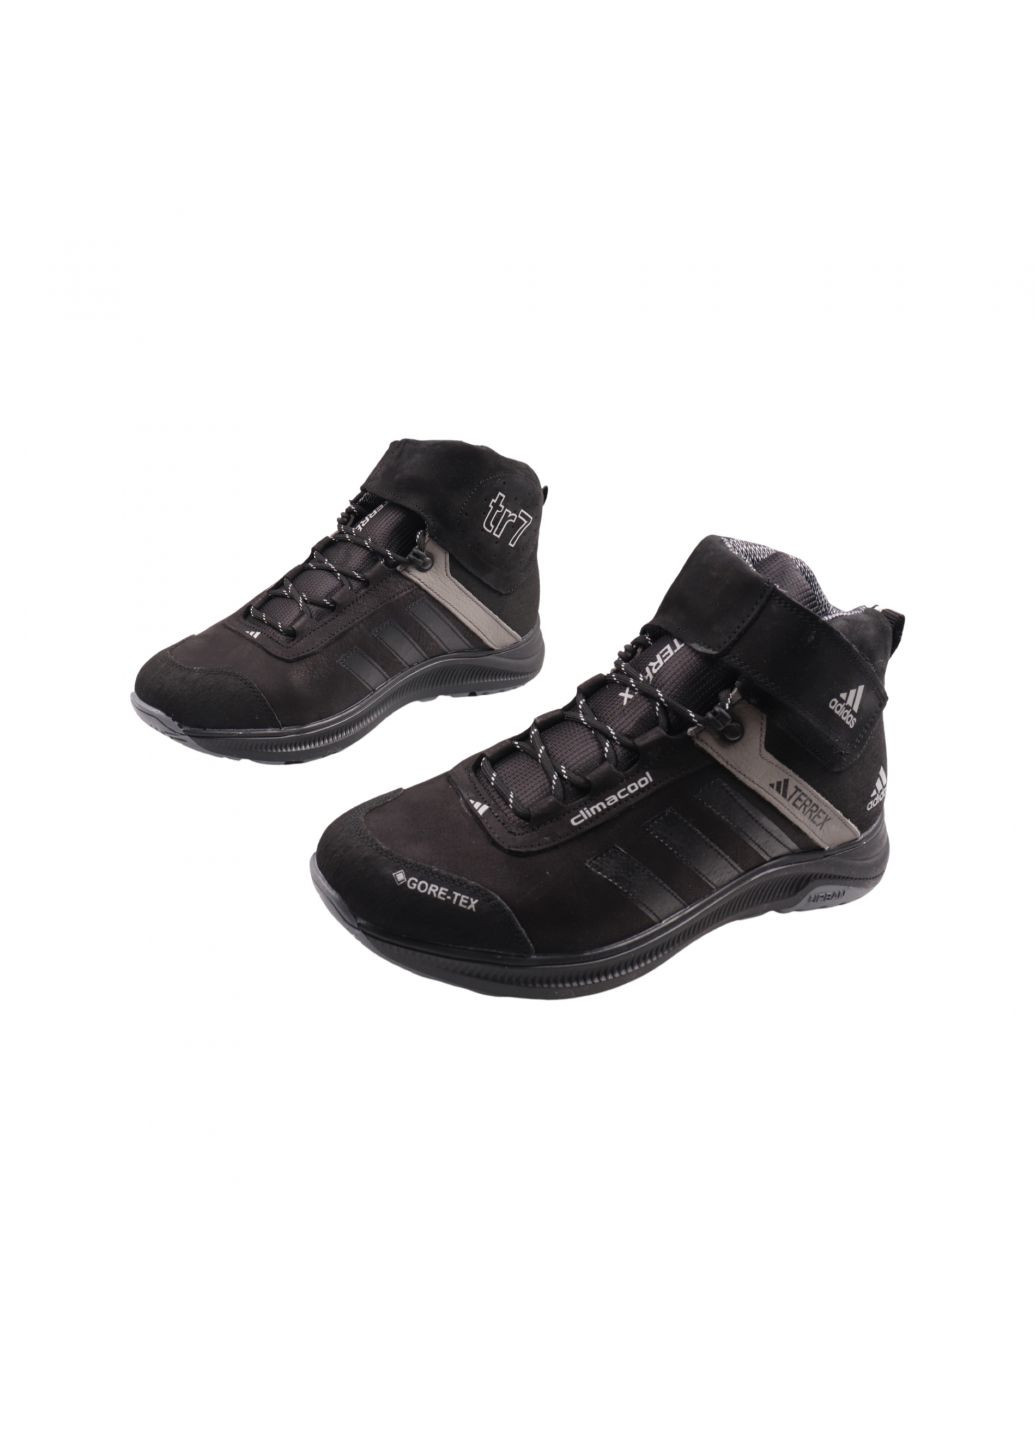 Черные ботинки мужские черные нубук MDK